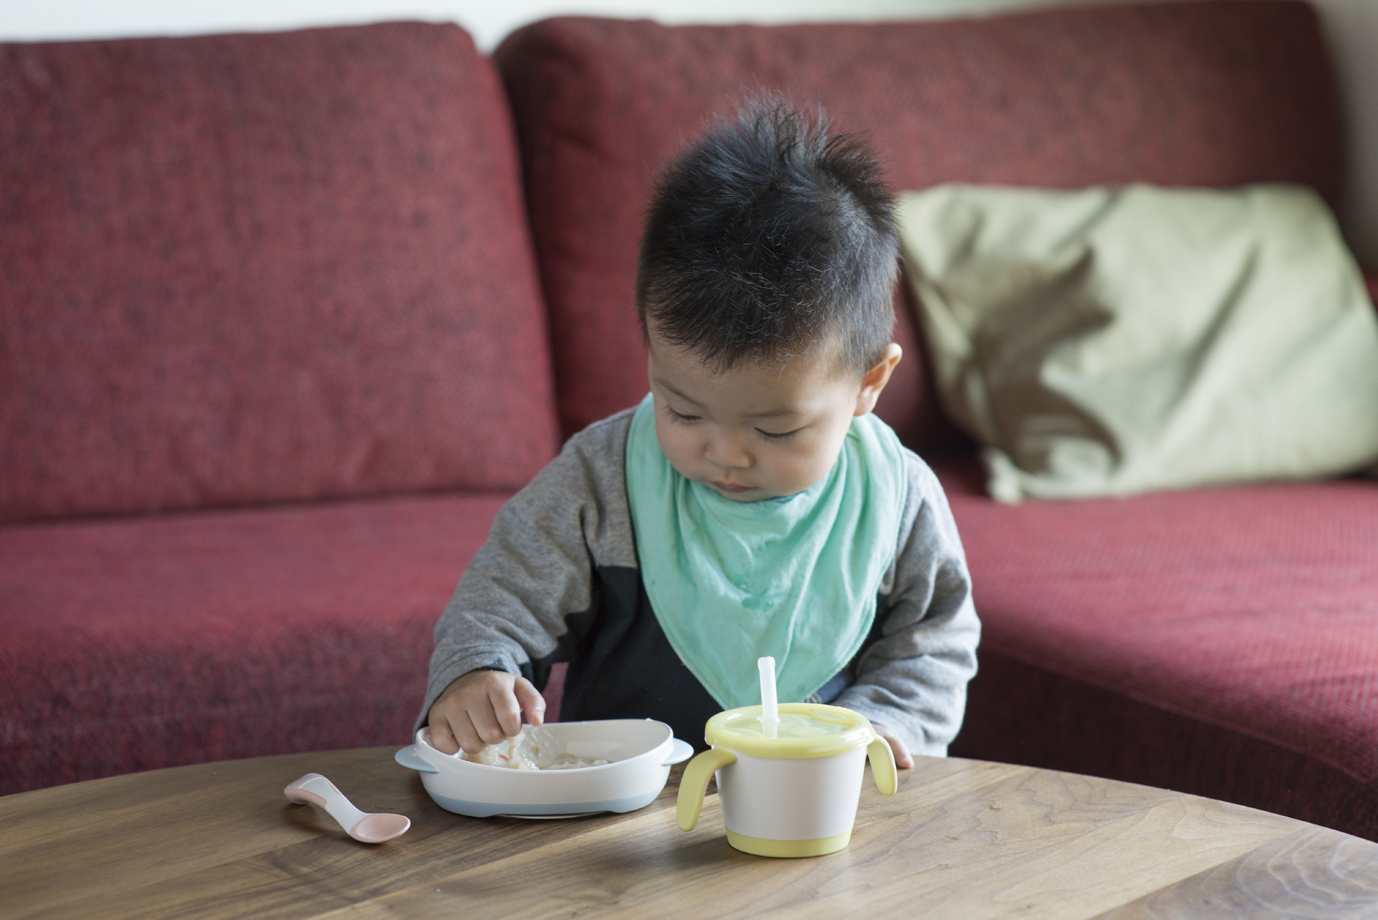 Khay ăn dặm TLI Richell Nhật Bản - bước 2 thiết kế hỗ trợ cho bé tập tự ăn | Baby